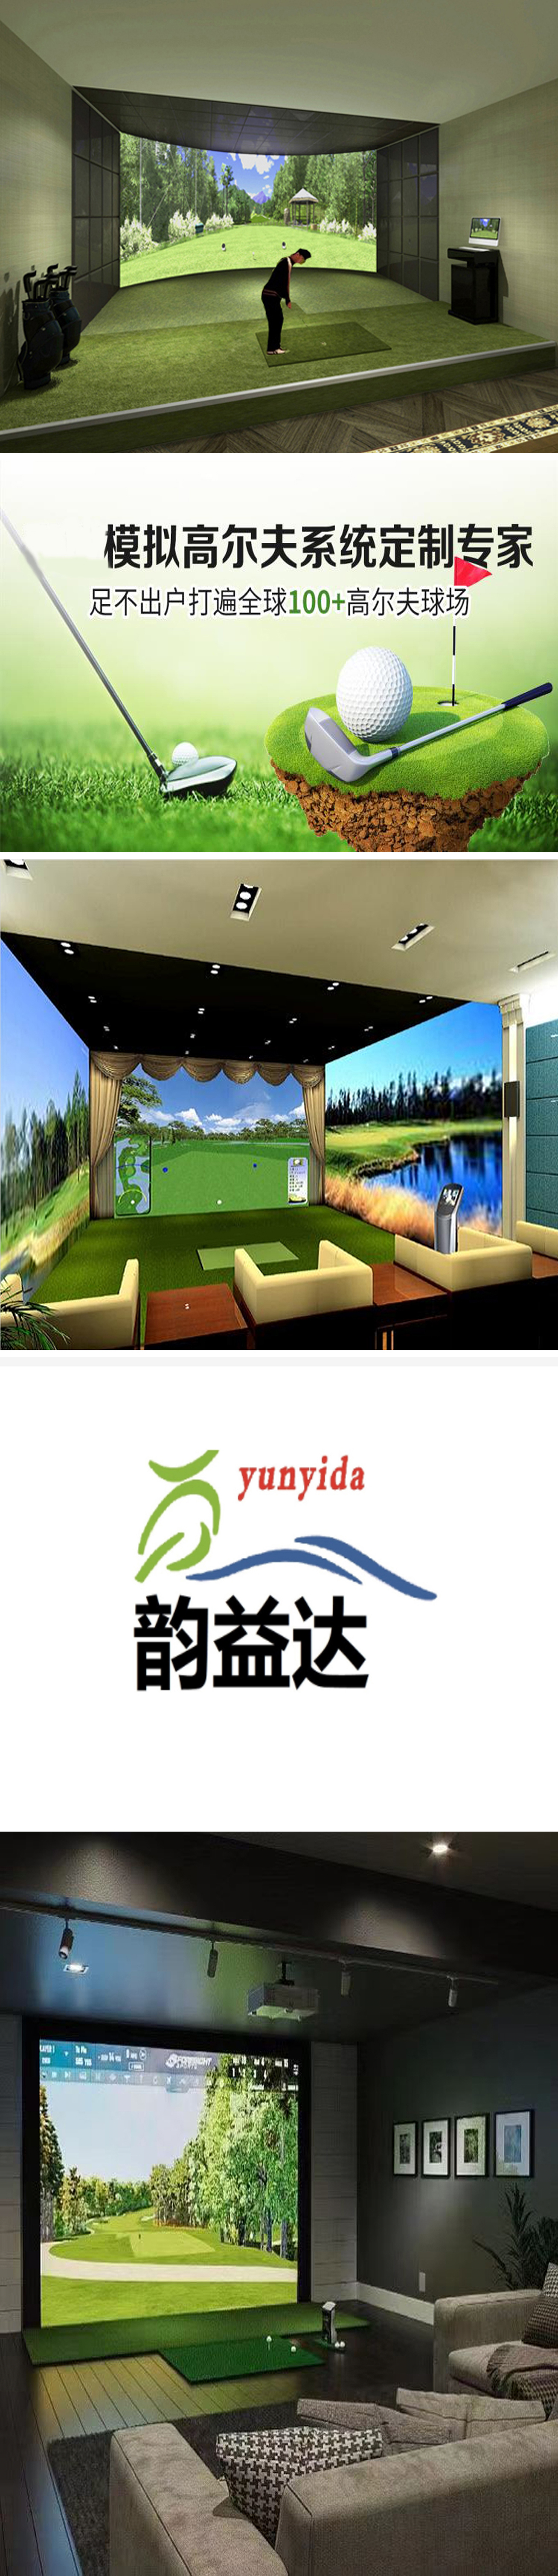 室内高尔夫模拟设备 002.jpg